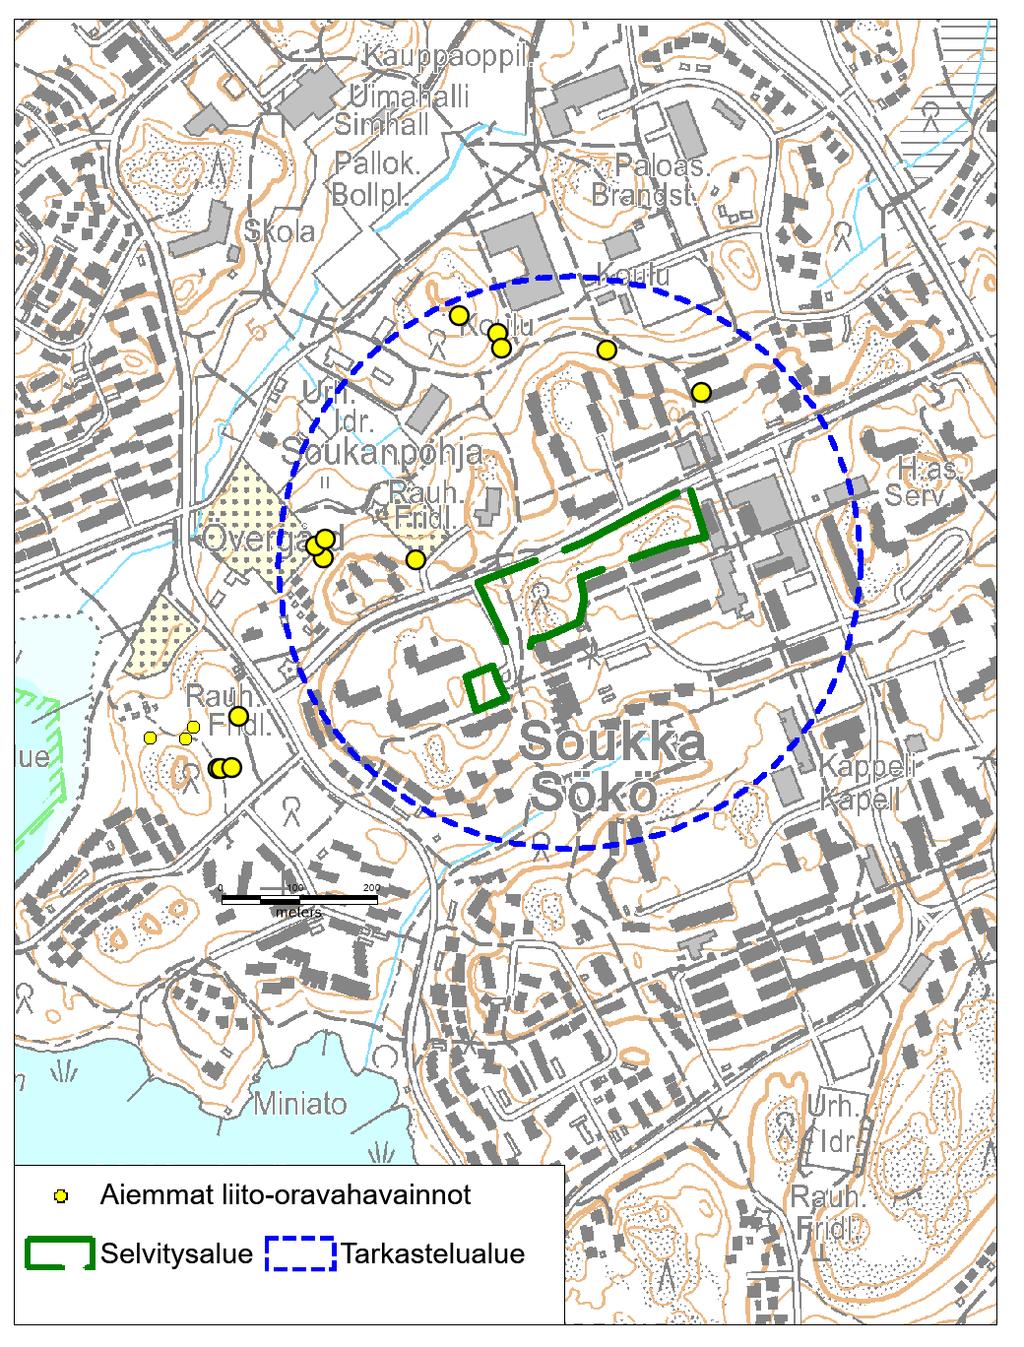 Kartta 1 Soukan selvitysalue vihreällä ja tarkastelualue sinisellä ympyrällä. Pisteet osoittavat aiemmin tehtyjä liito-oravahavaintoja. 3 Kartoitusmenetelmät 3.